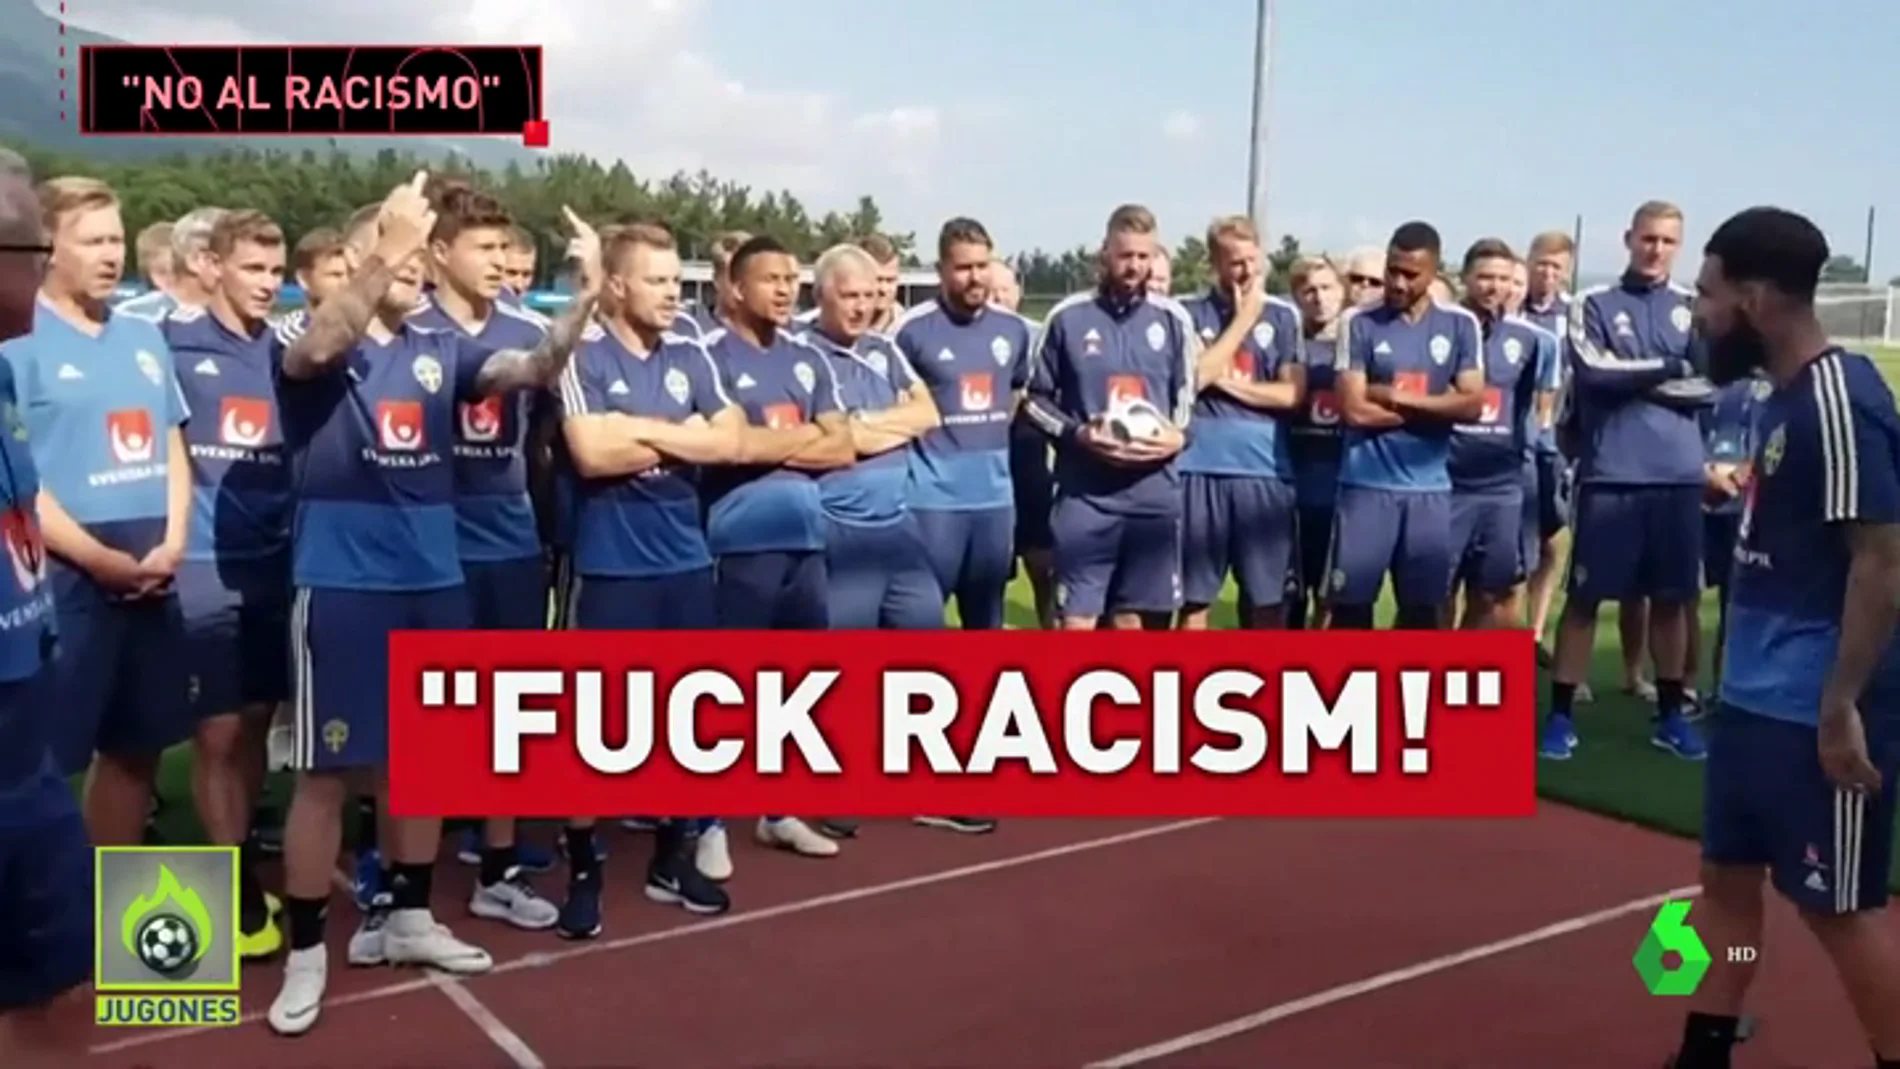 Boicot de 24 horas a las redes sociales de varios jugadores ingleses para protestar contra el racismo